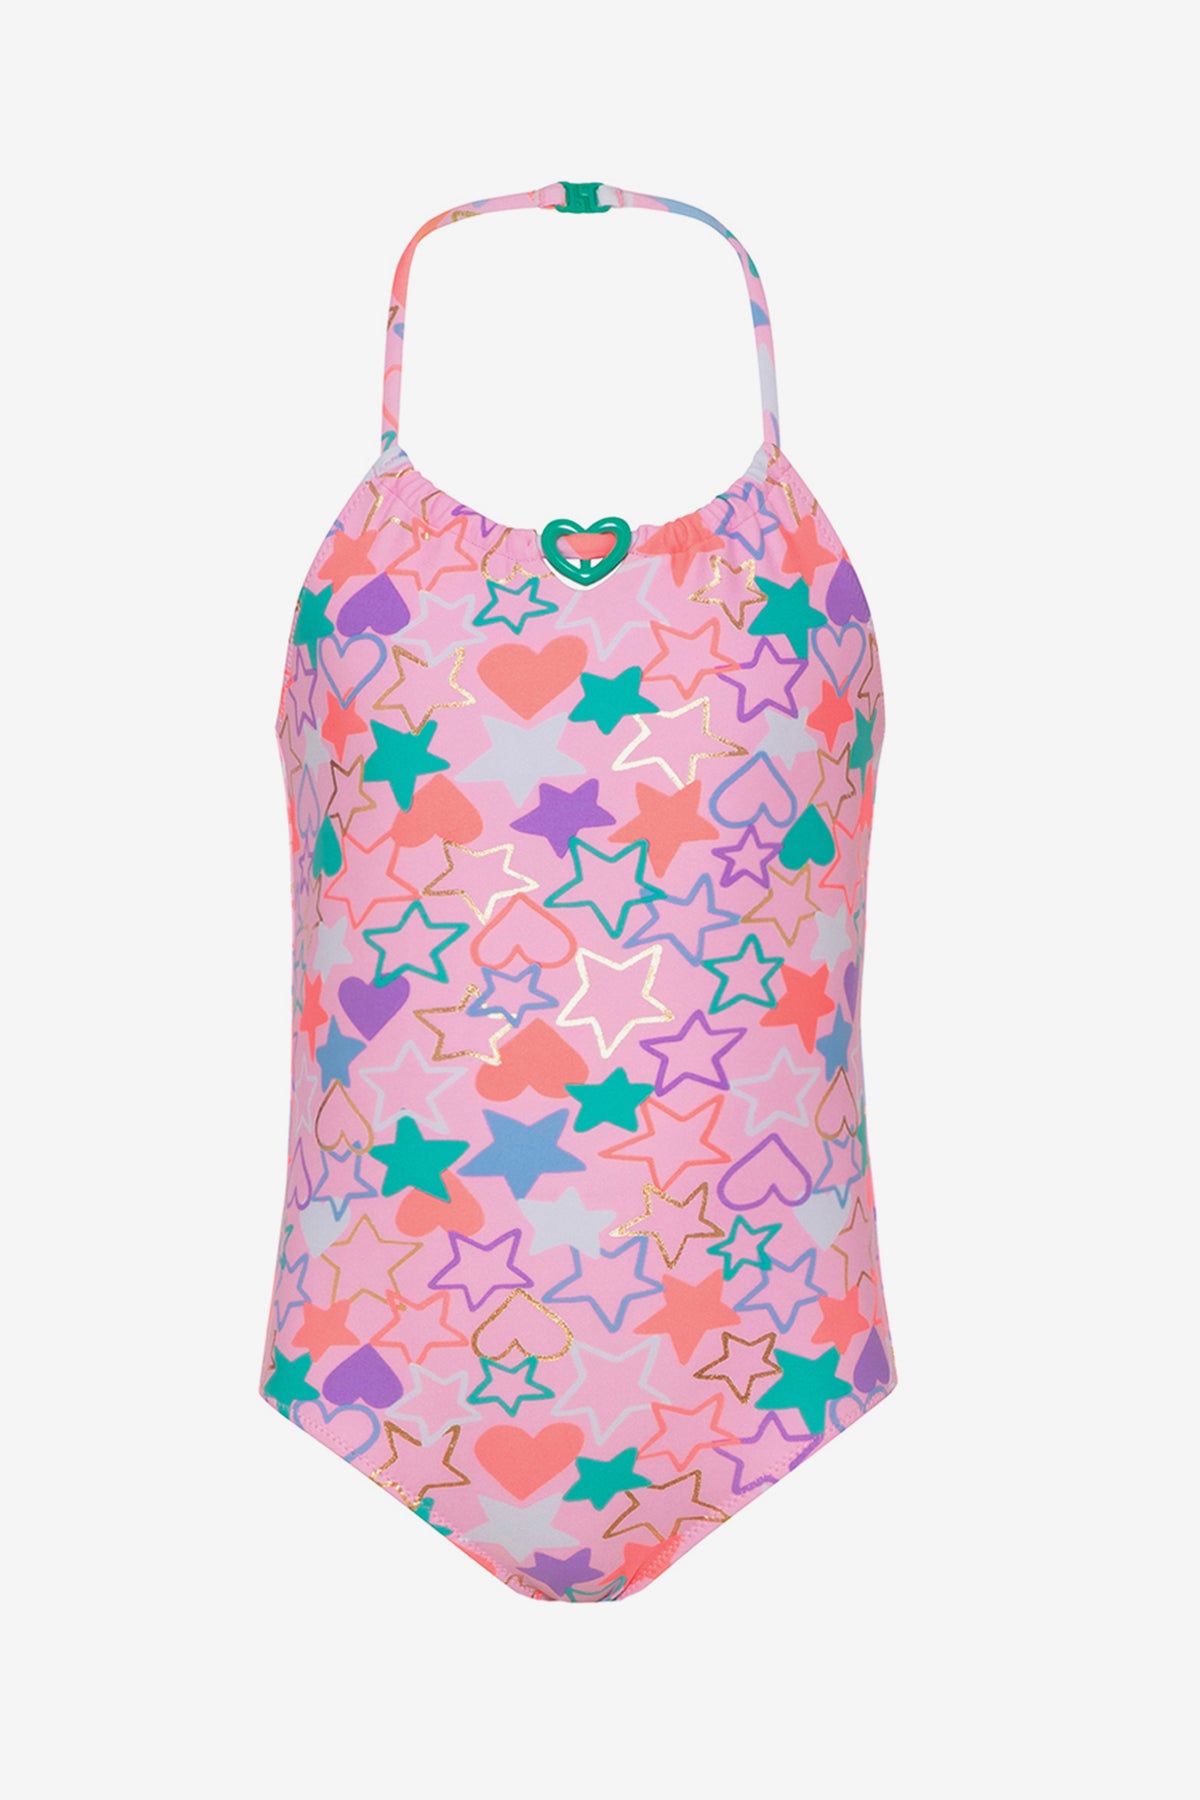 Sunuva Beaded Heart Girls Swimsuit Size 3 4 Left Mini Ruby